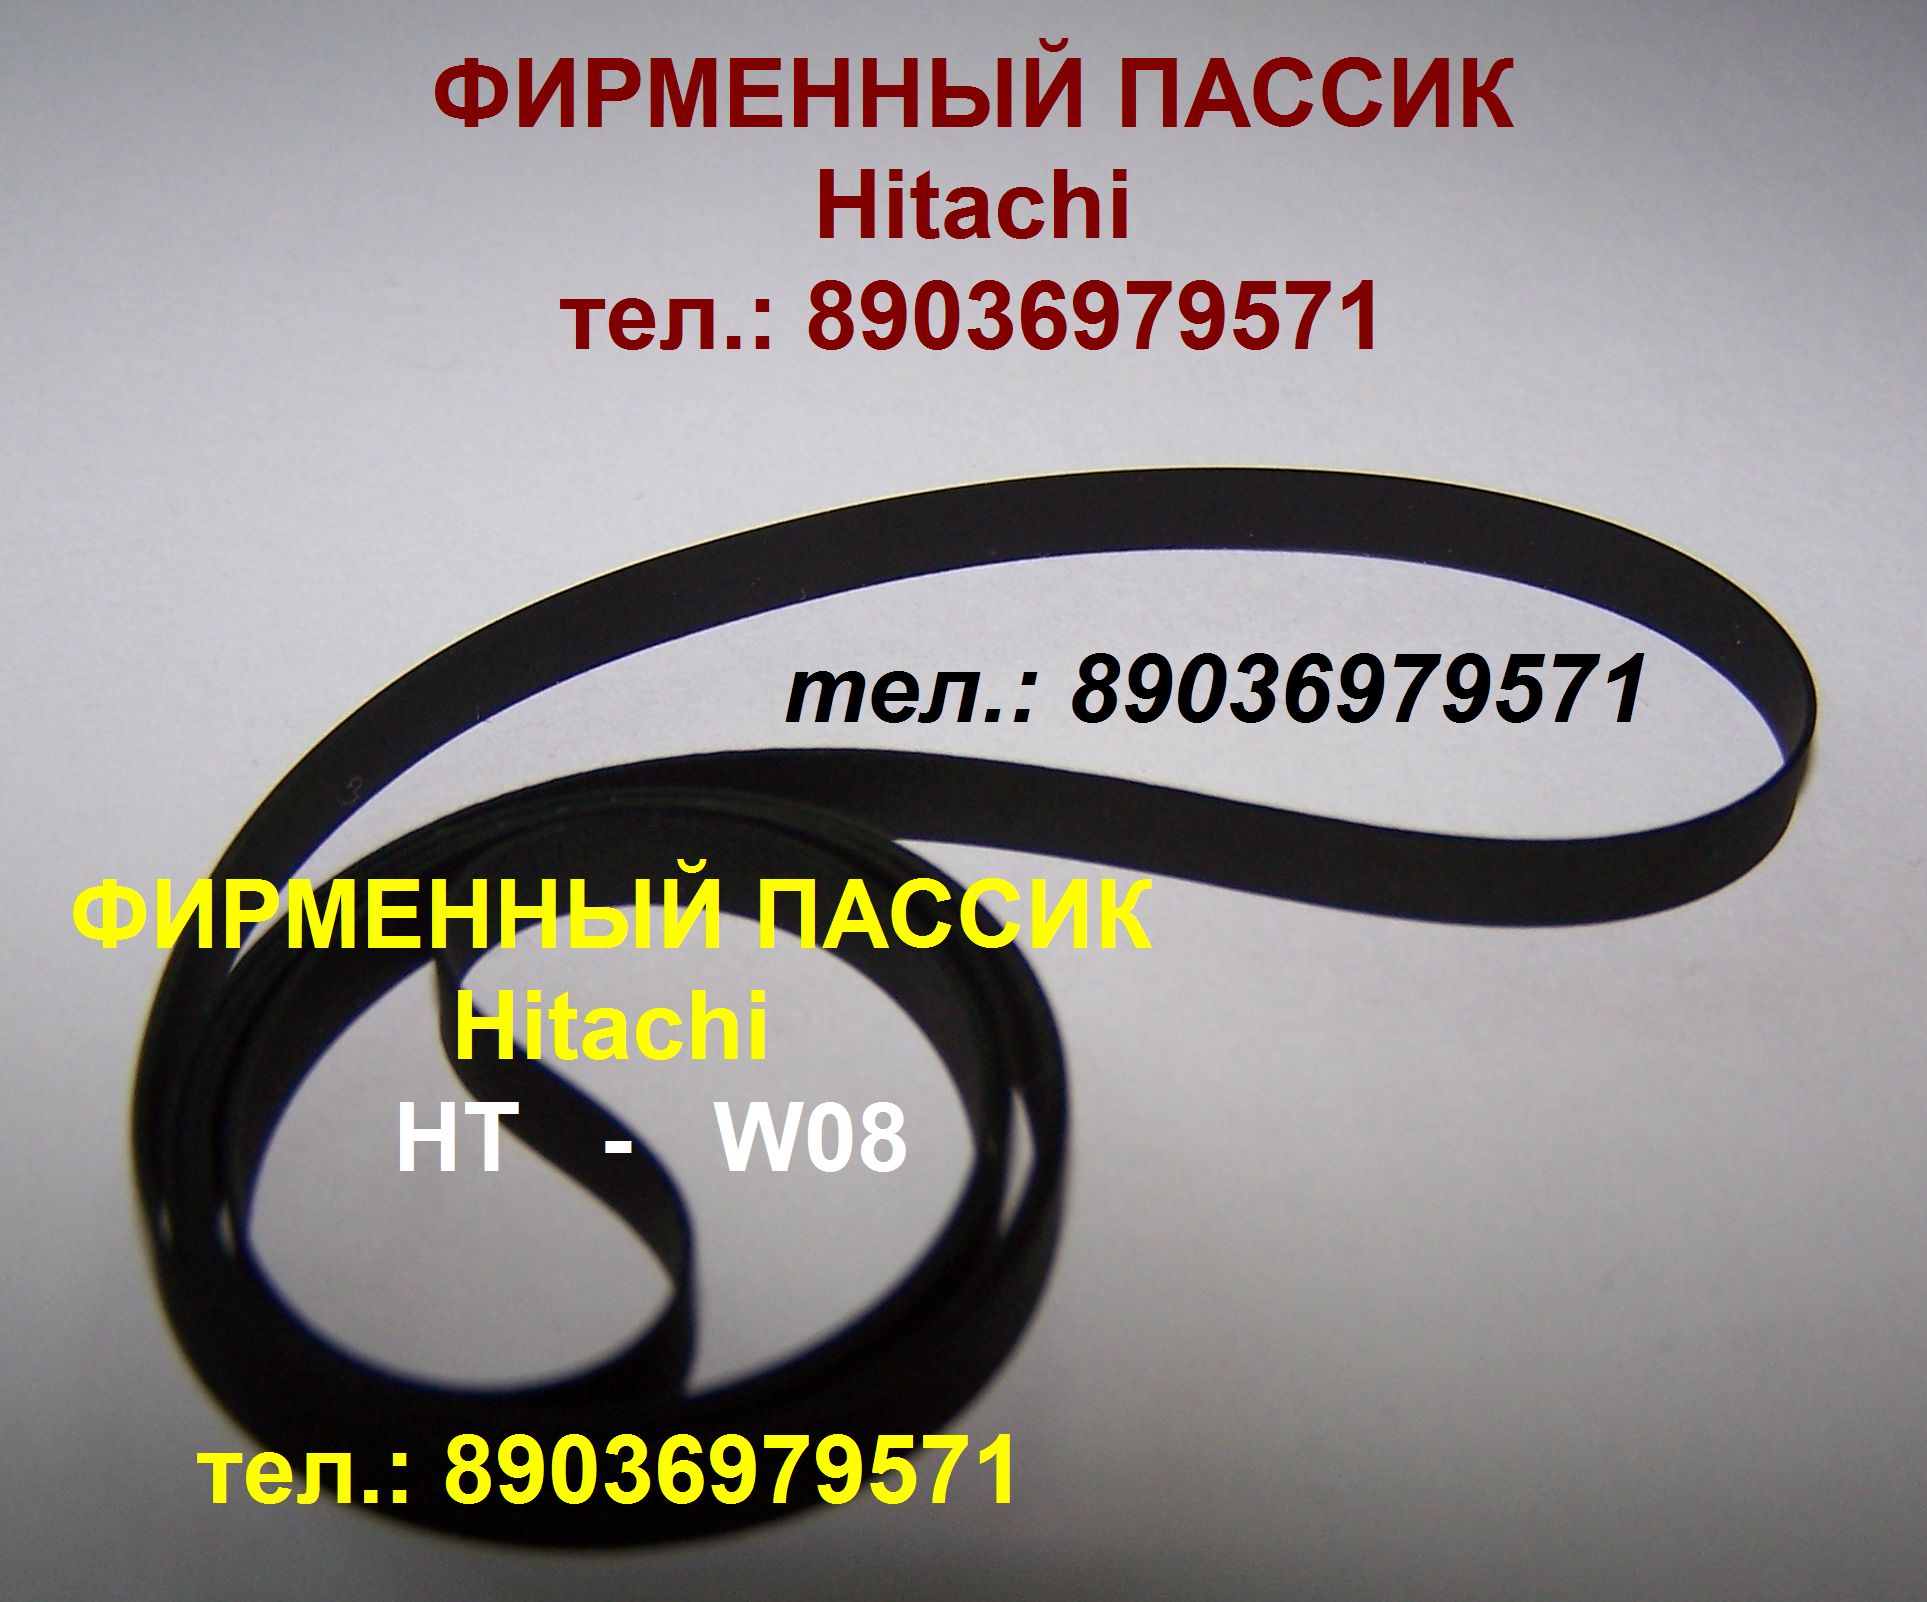 пассик для Hitachi HT-W08 пасик Хитачи HTW08 Hitachi HT W 08 ремень в городе Москва, фото 1, Московская область